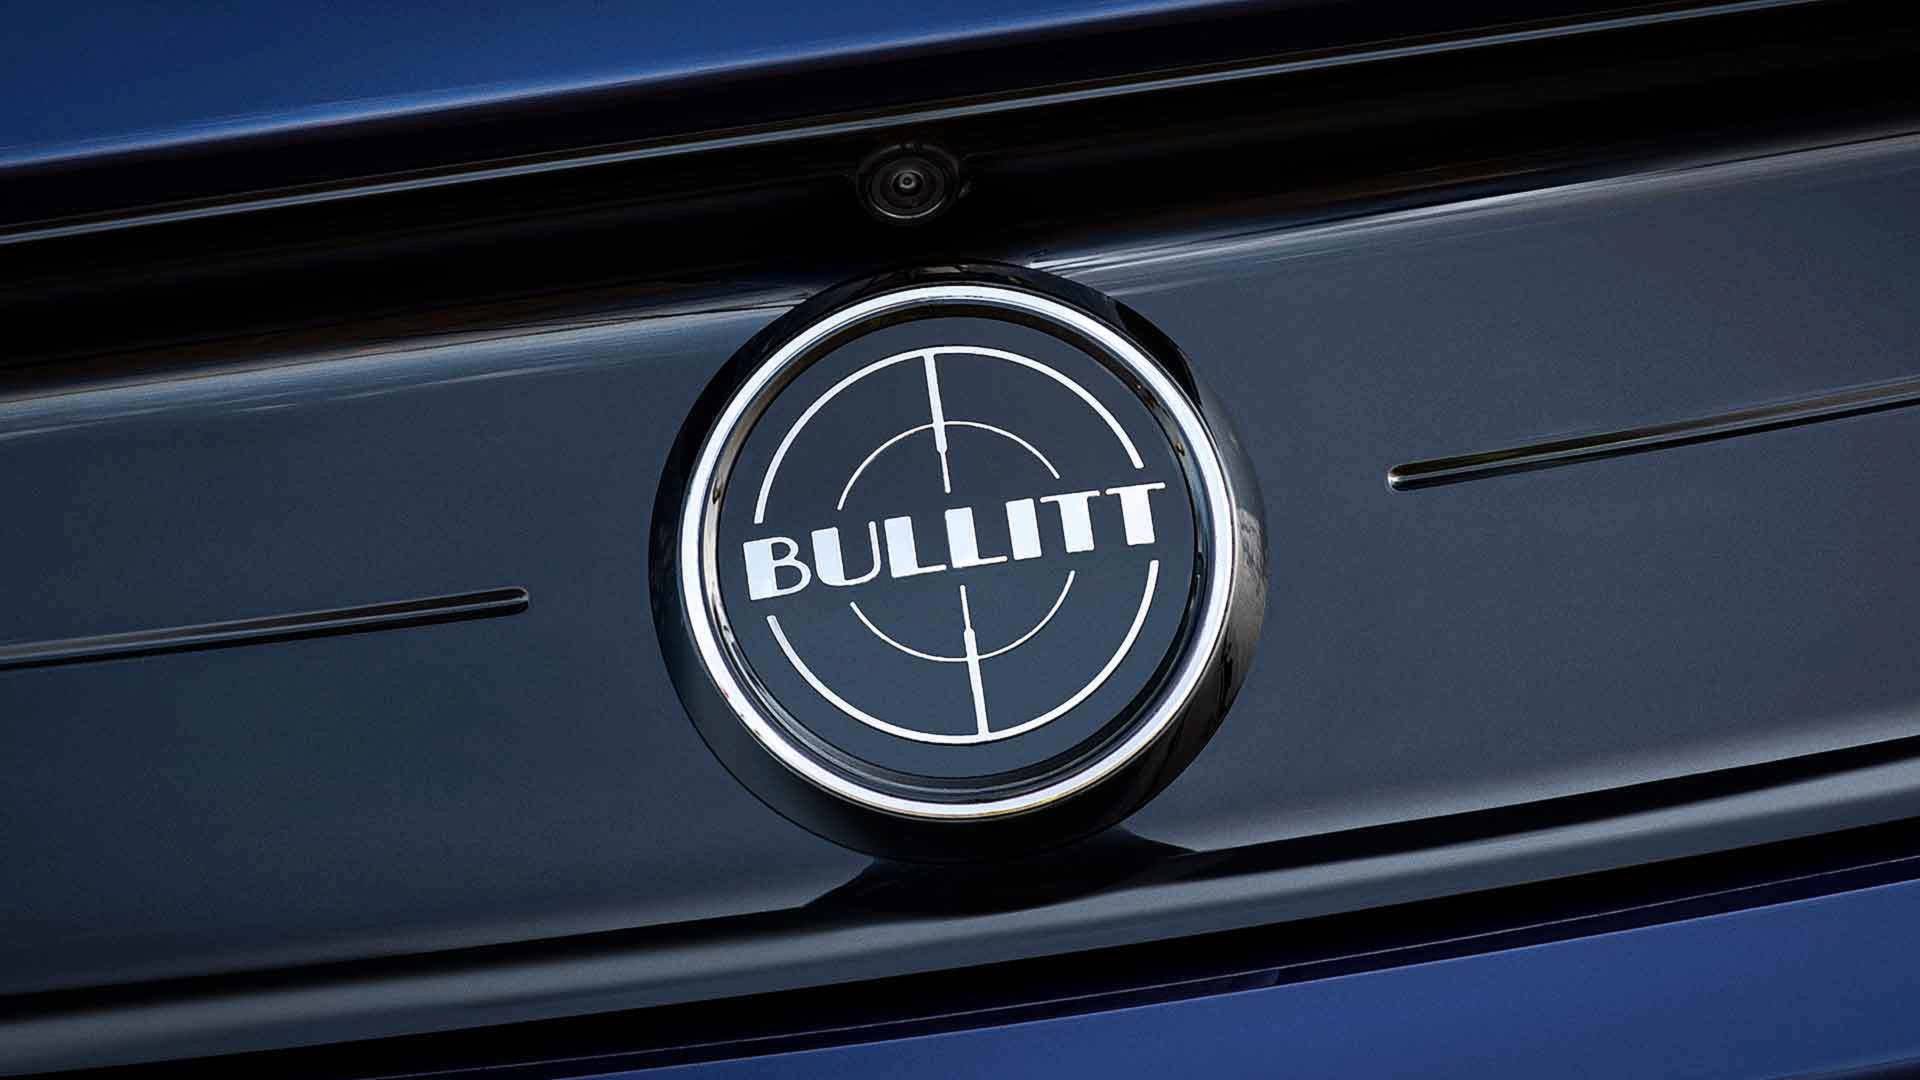 2019 Ford Mustang Bullitt Kona Blue Badge Wallpapers #9 of 9